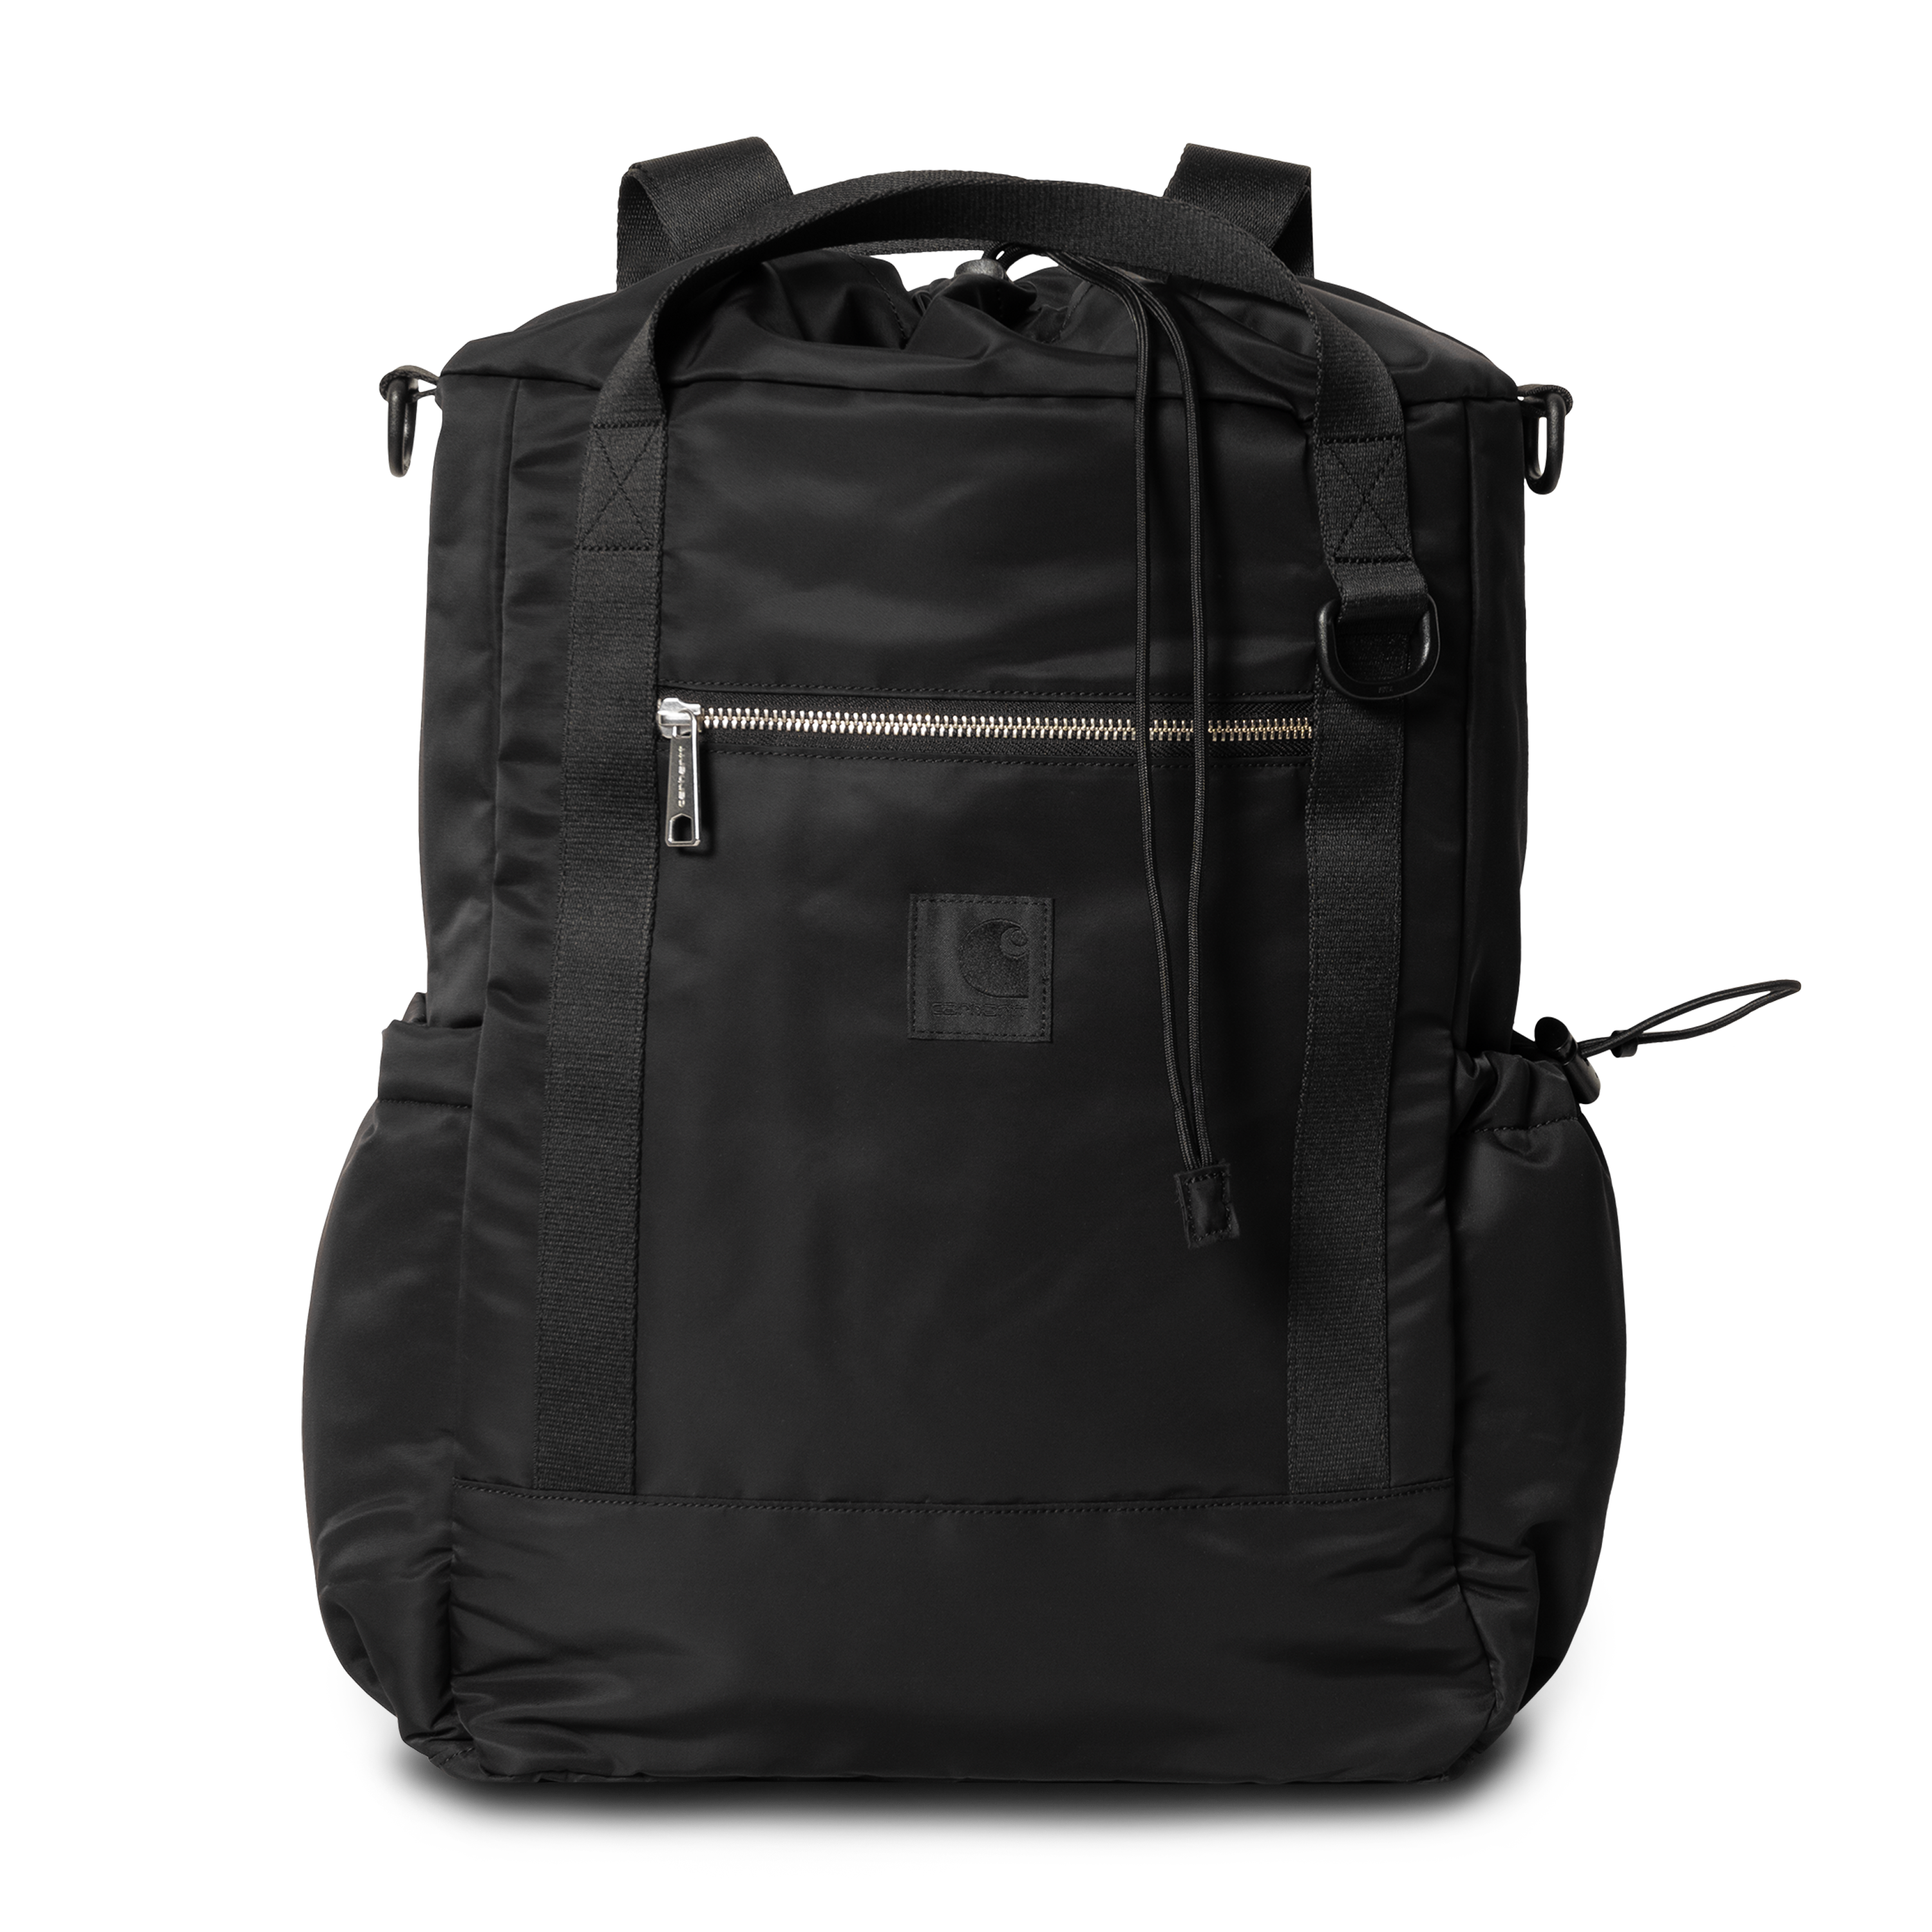 Carhartt WIP Otley Backpack in Black